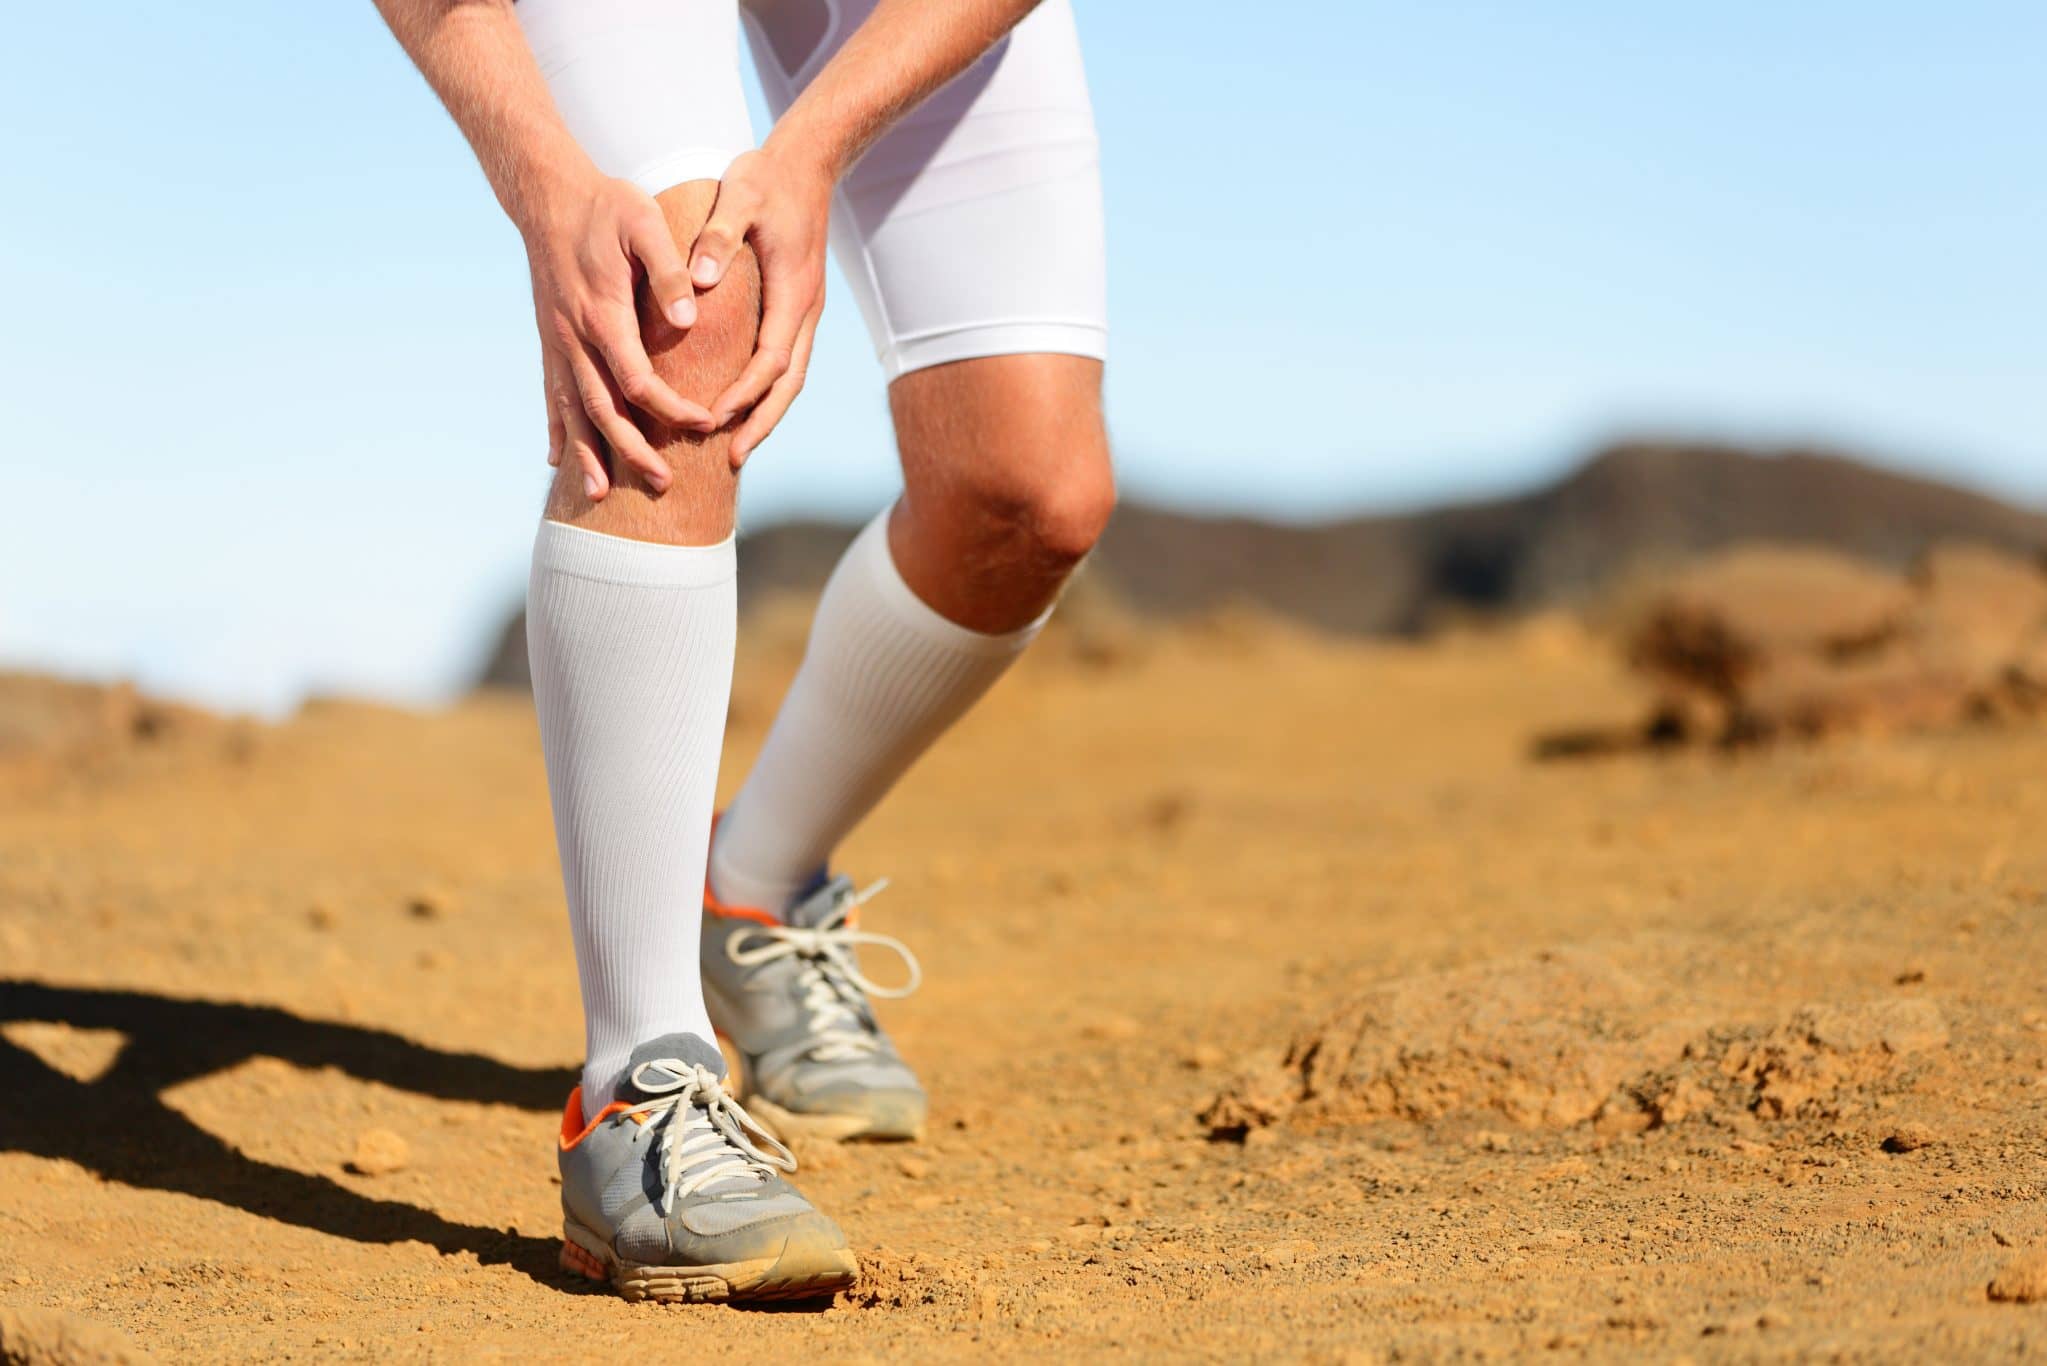 Douleurs au genou pendant le sport : que faire ? | soulager un genou douloureux | Jérôme Auger | Paris 16